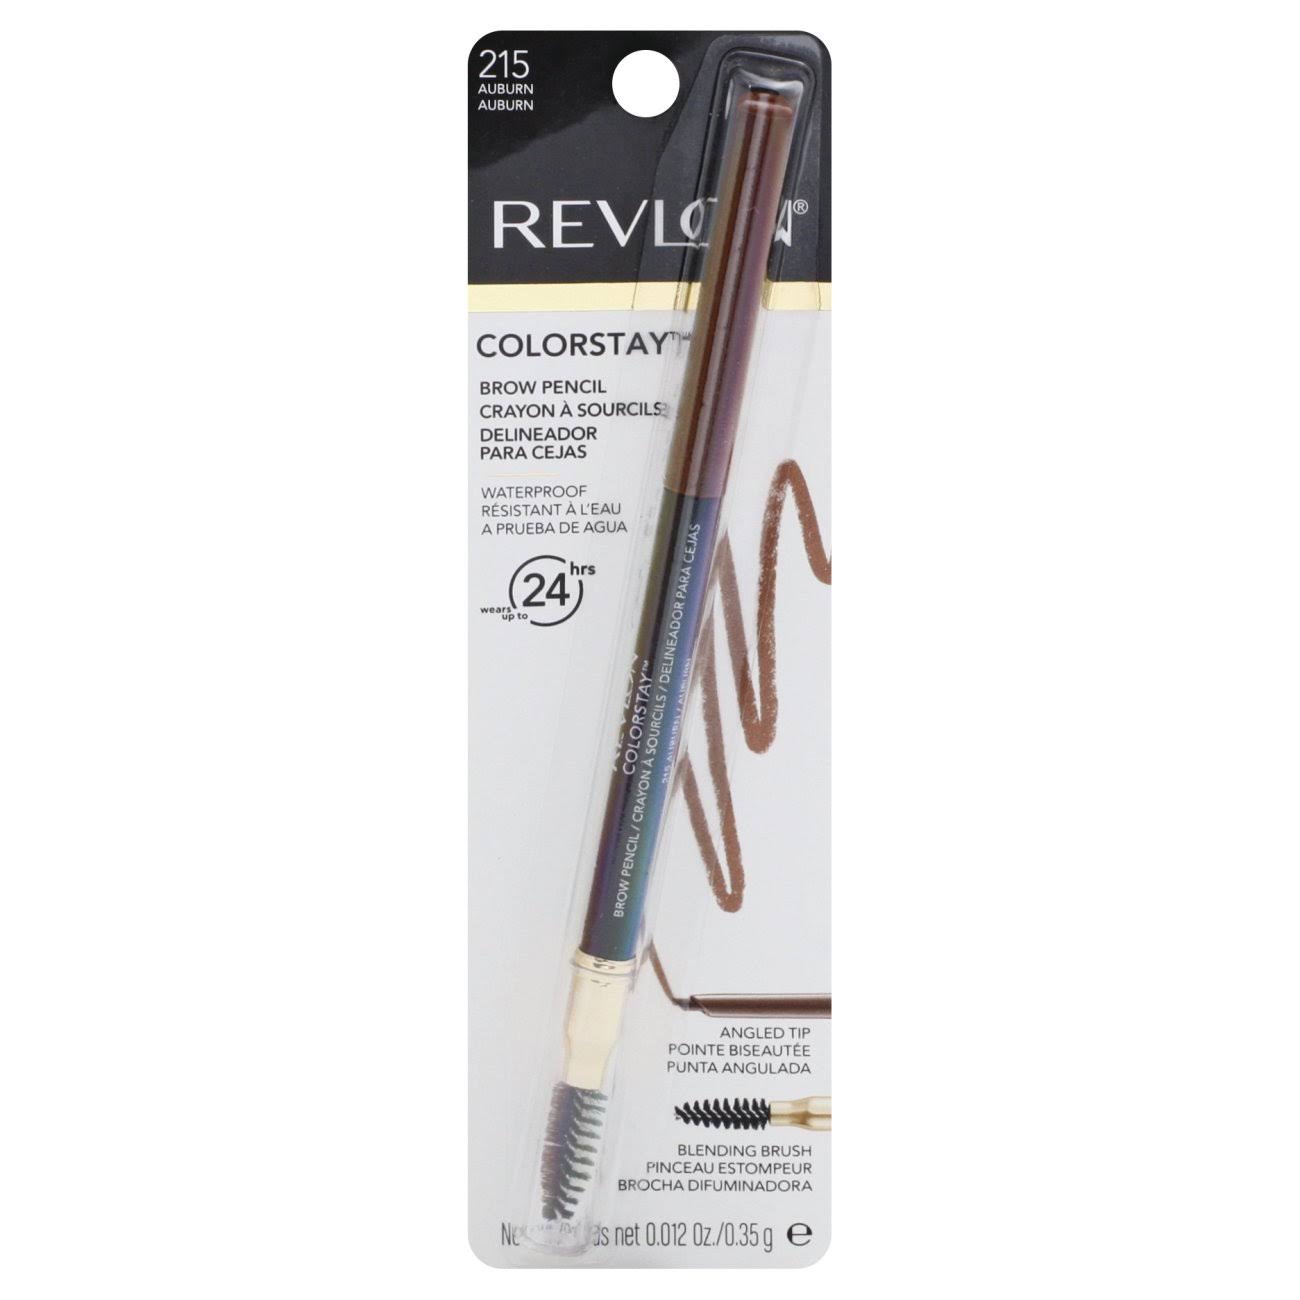 Revlon Color Stay Brow Pencil 215 - Auburn .012oz